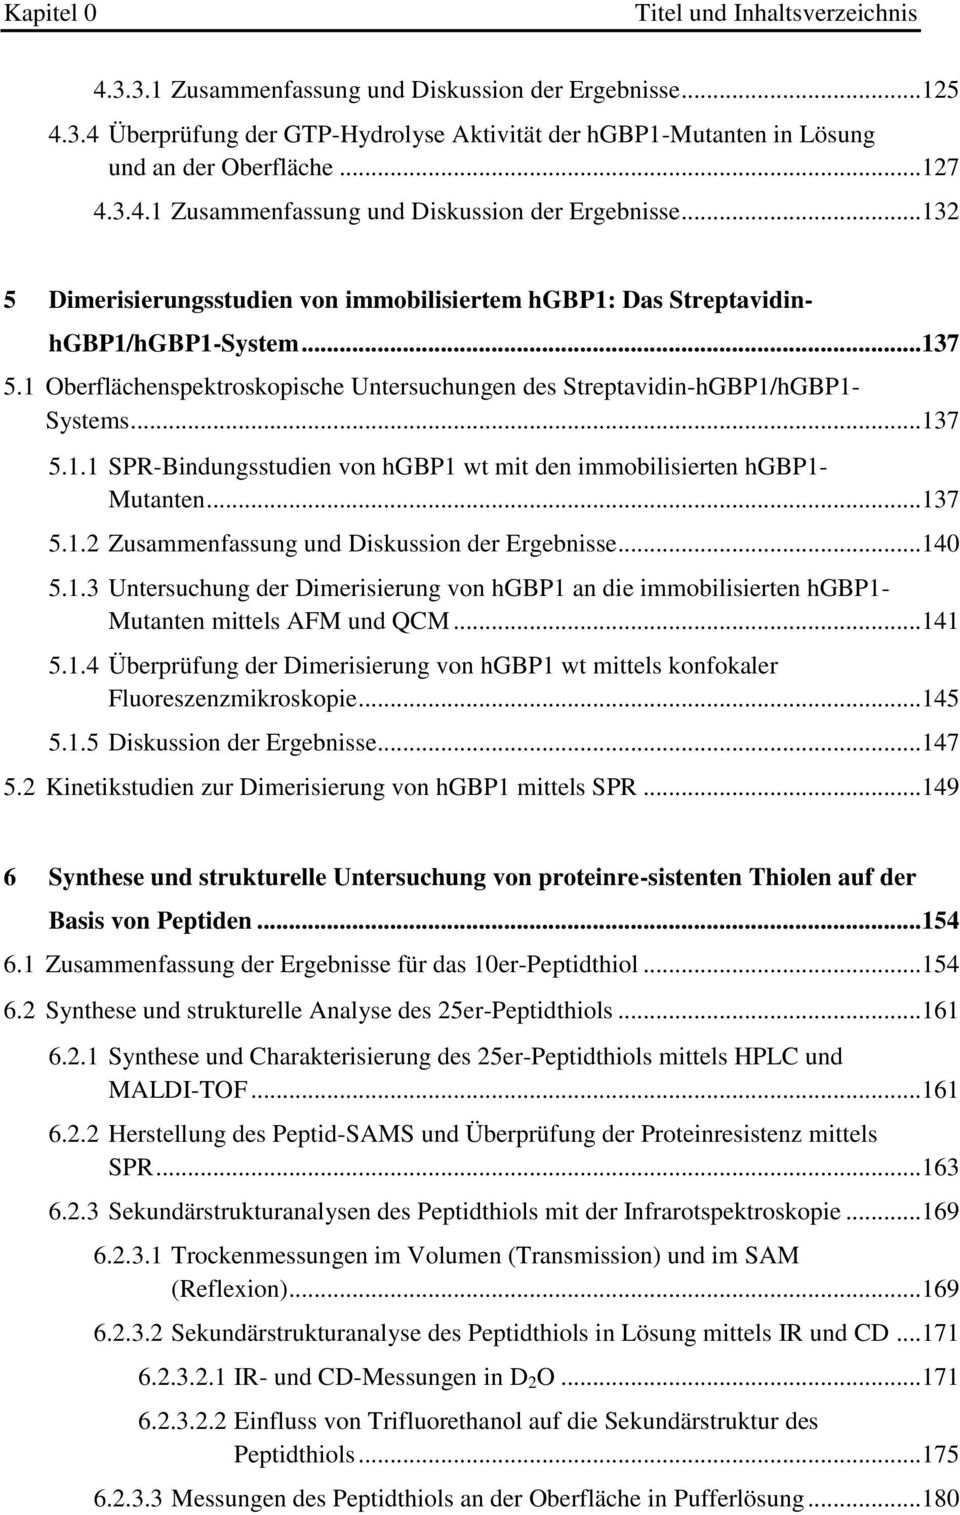 .. 140 5.1.3 Untersuchung der Dimerisierung von hgbp1 an die immobilisierten hgbp1- Mutanten mittels AFM und QCM... 141 5.1.4 Überprüfung der Dimerisierung von hgbp1 wt mittels konfokaler Fluoreszenzmikroskopie.